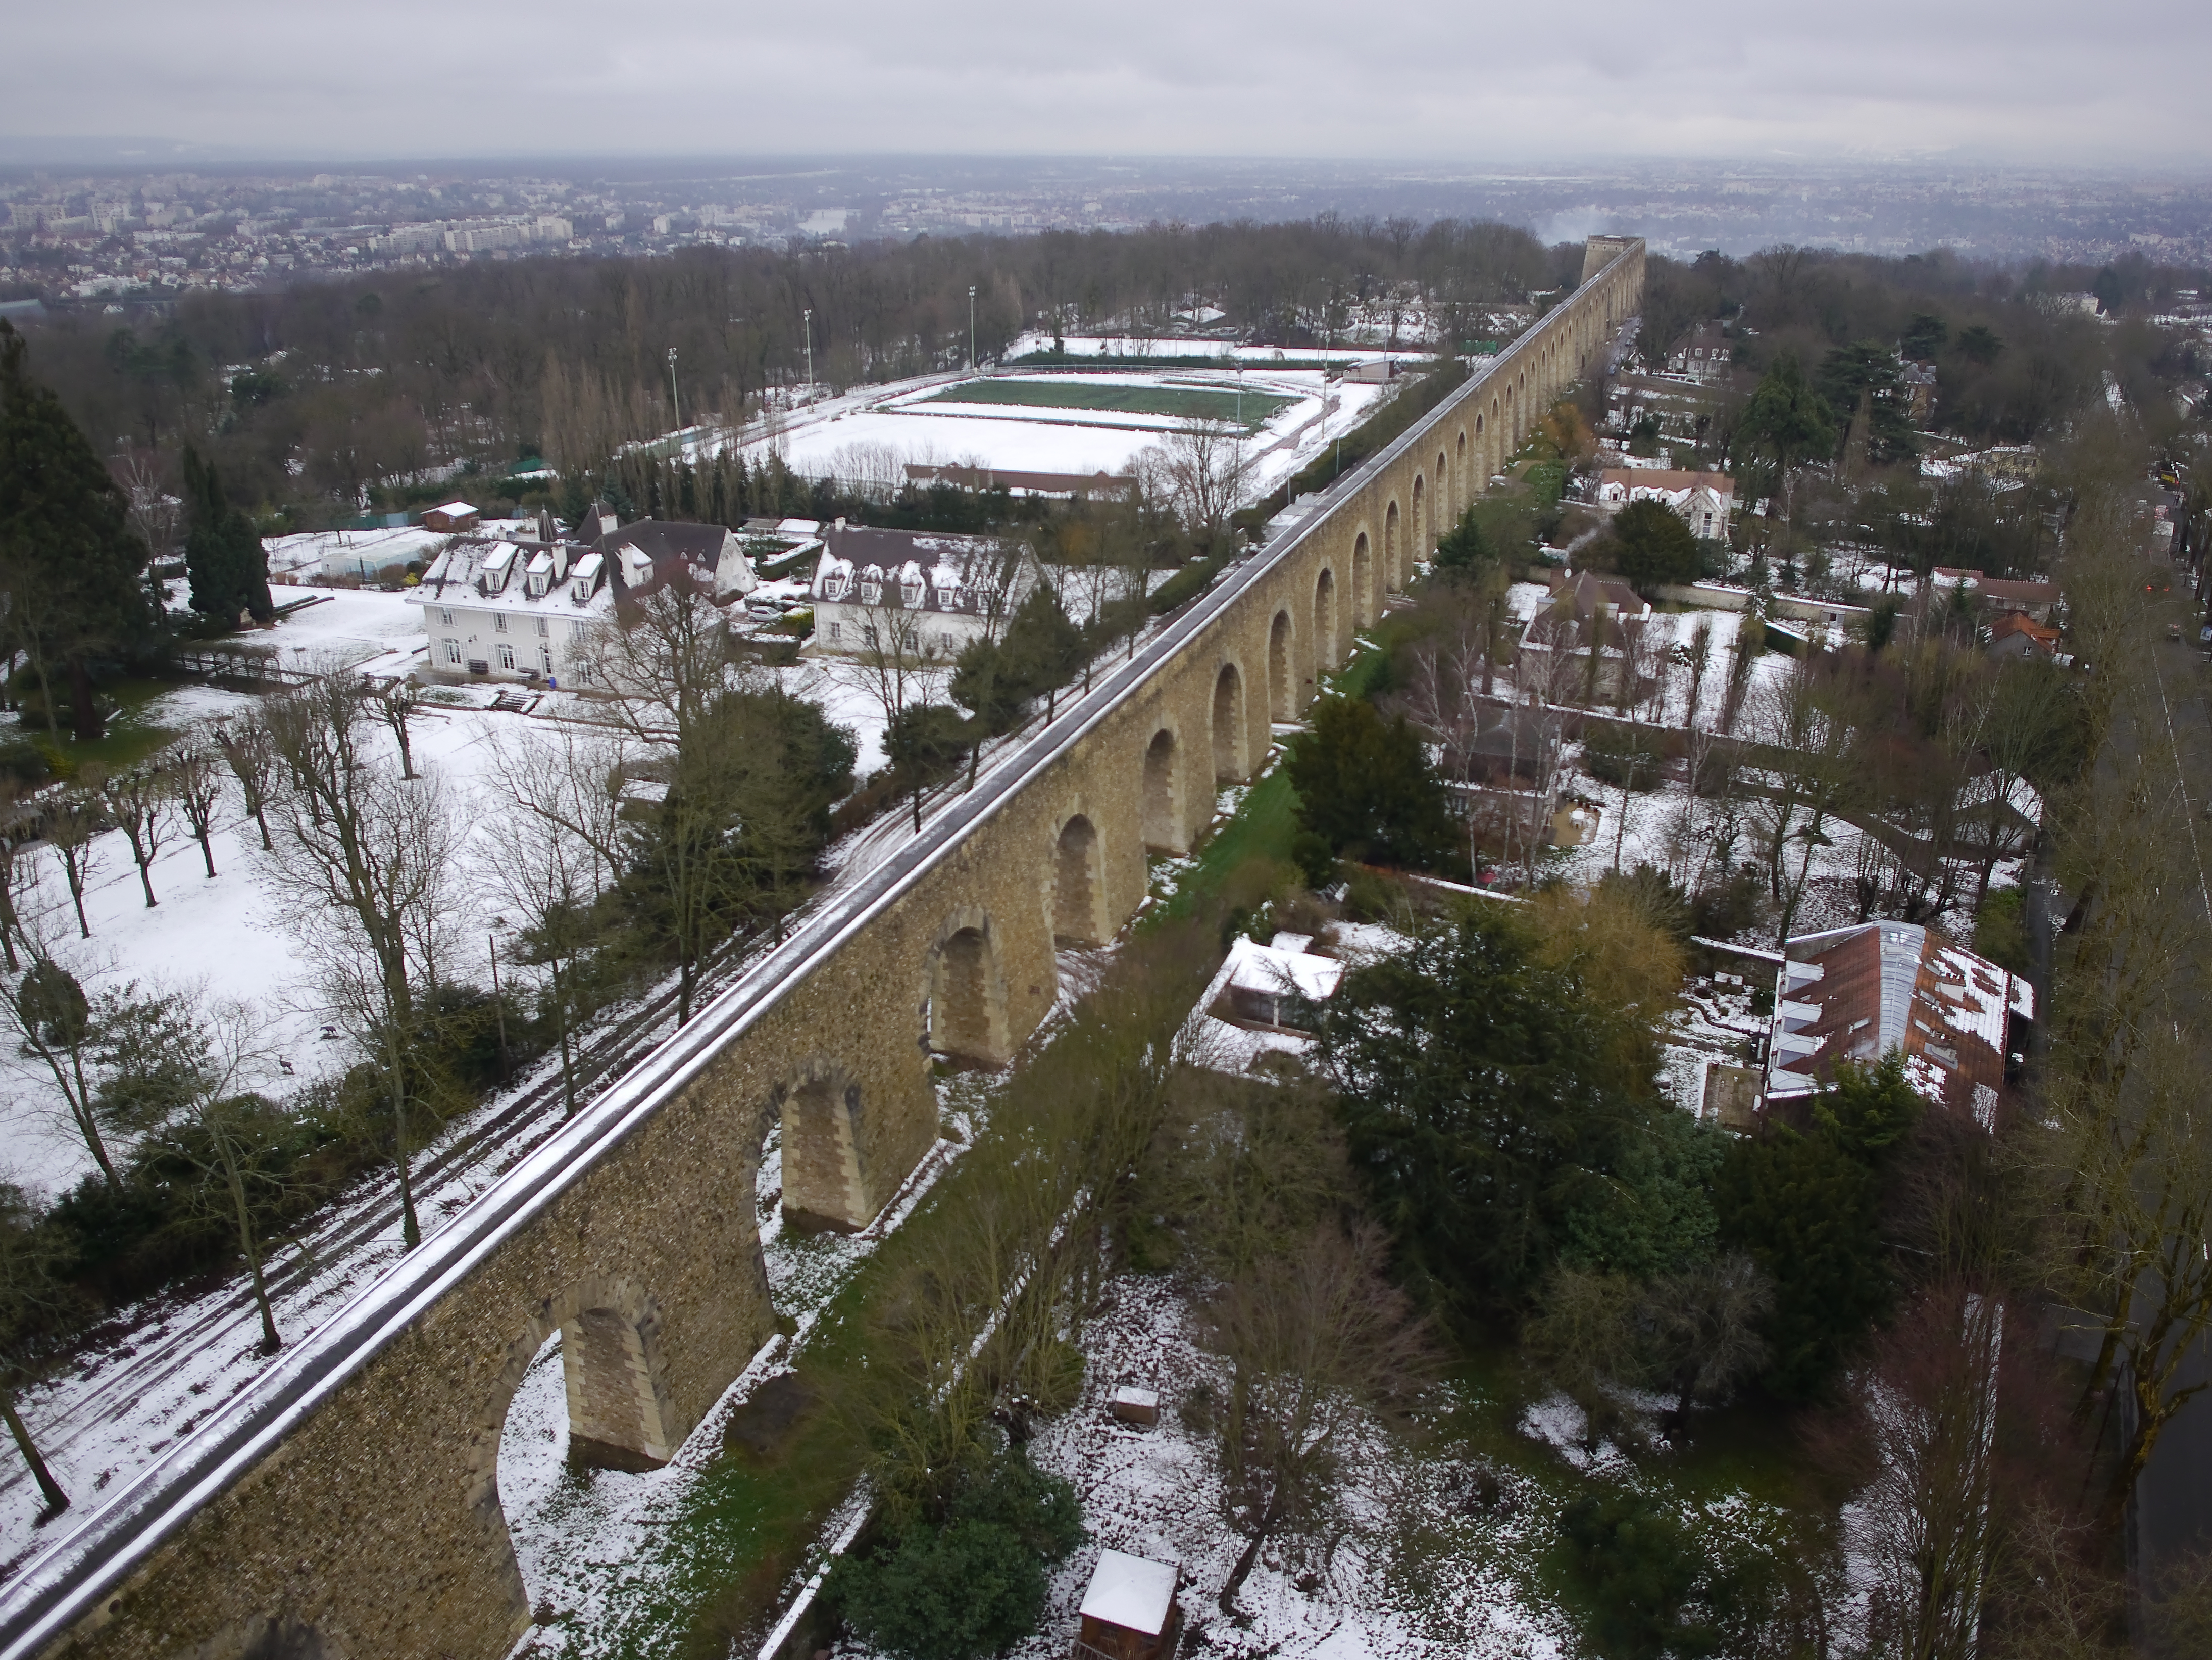 Aqueduc_de_Louveciennes,_aerial_winter_view